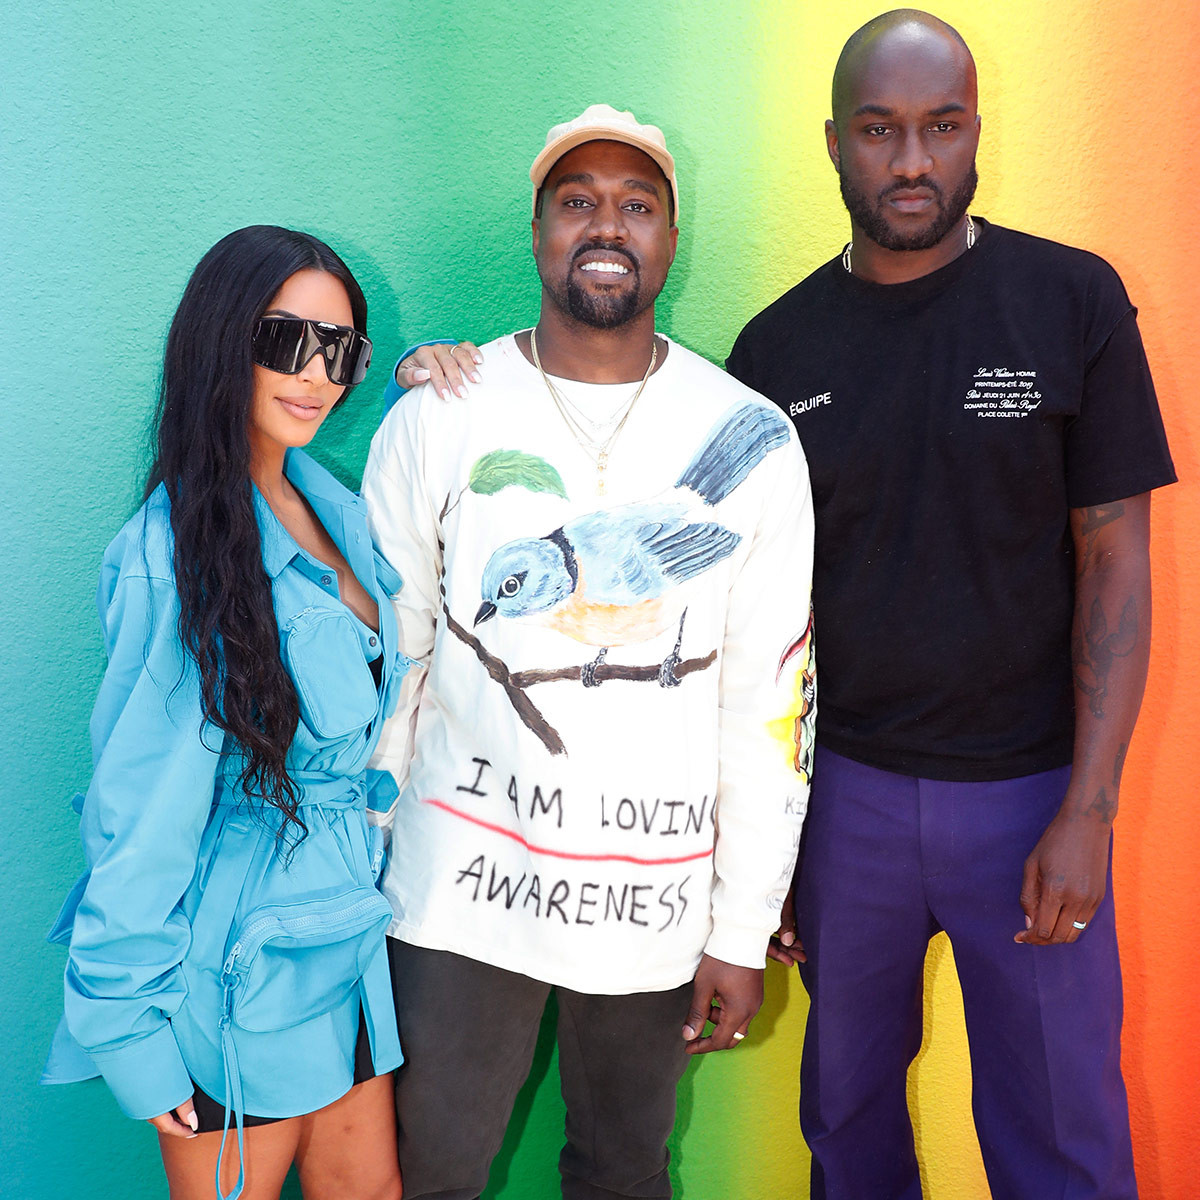 Virgil Abloh and Kanye West Share Tear-Filled Moment